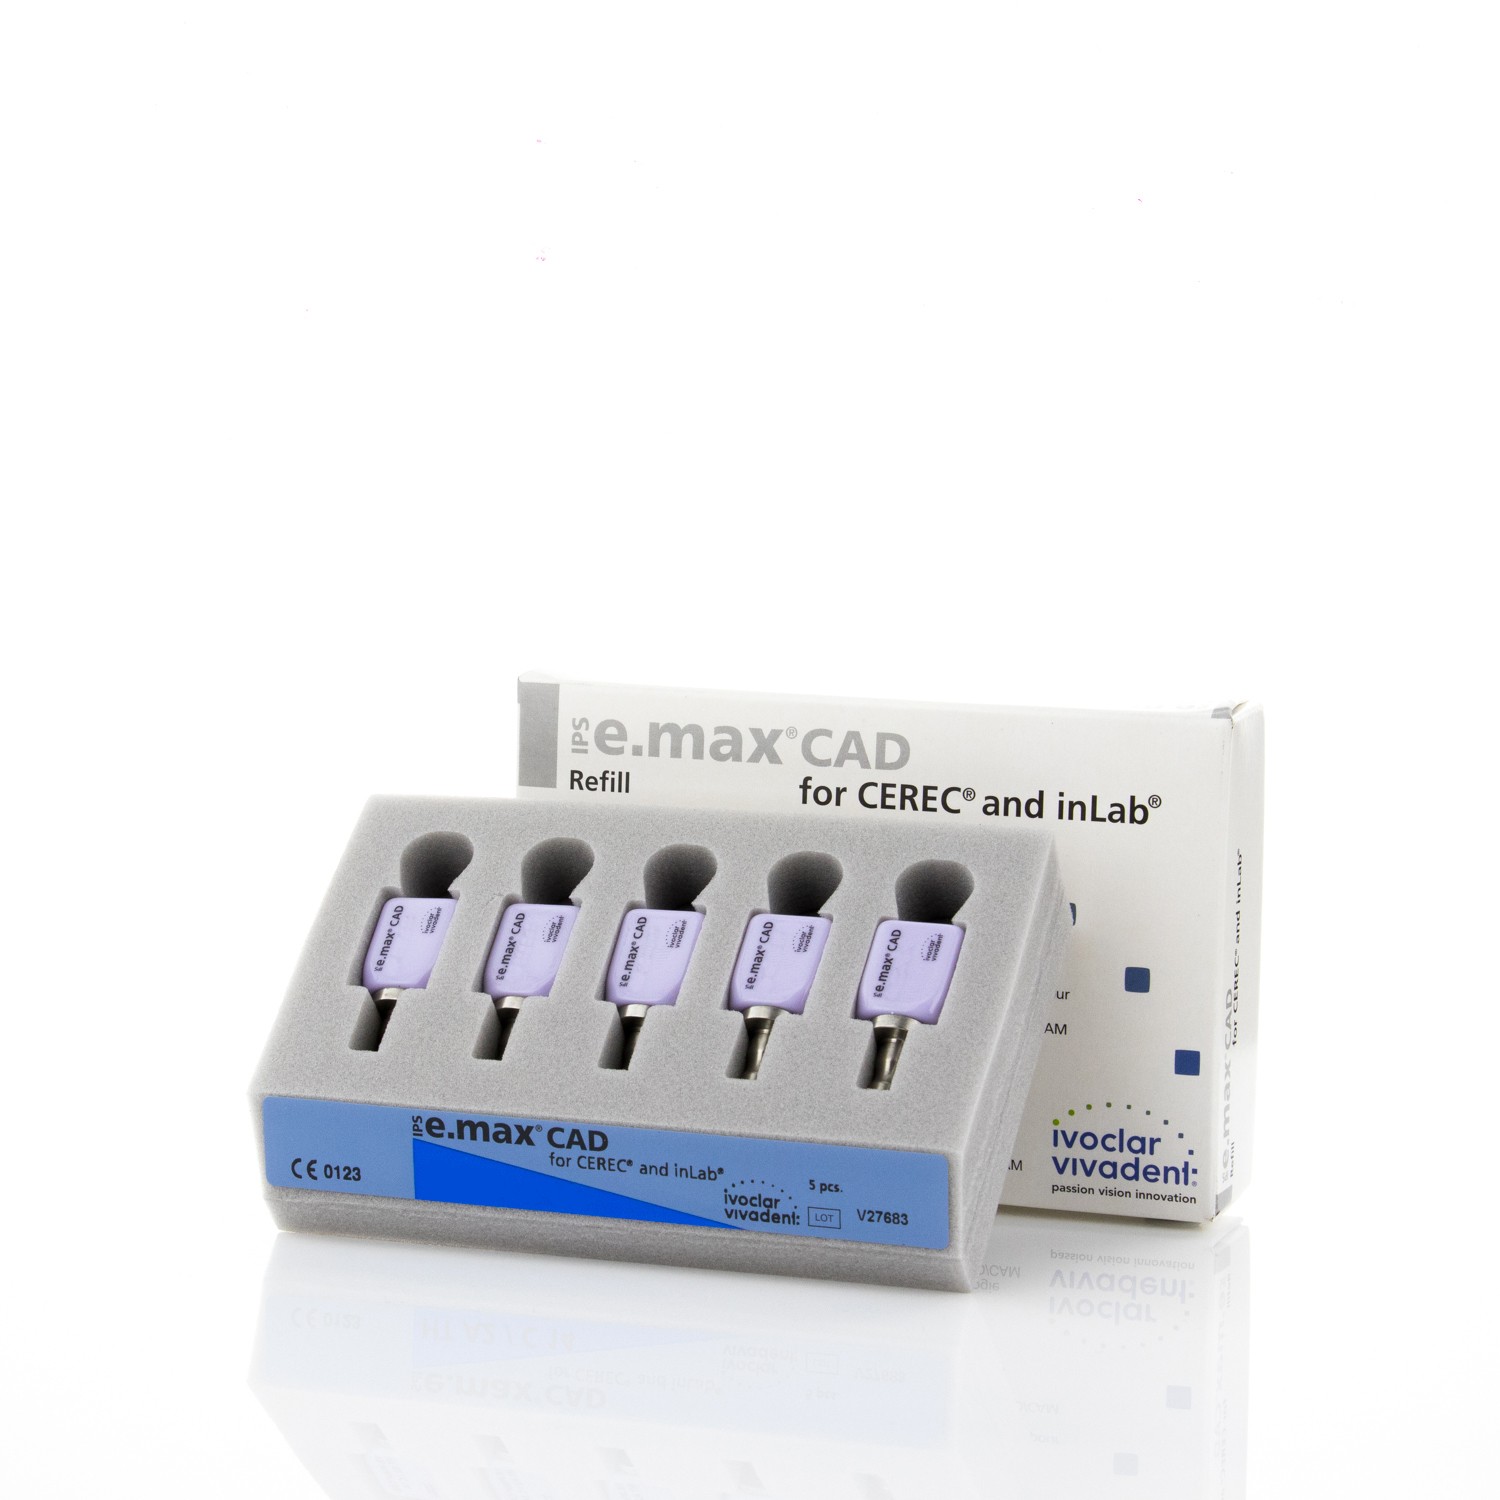 IPS E.MAX CAD CEREC/INLAB 605320 LT I12 A3 - 5 Stk